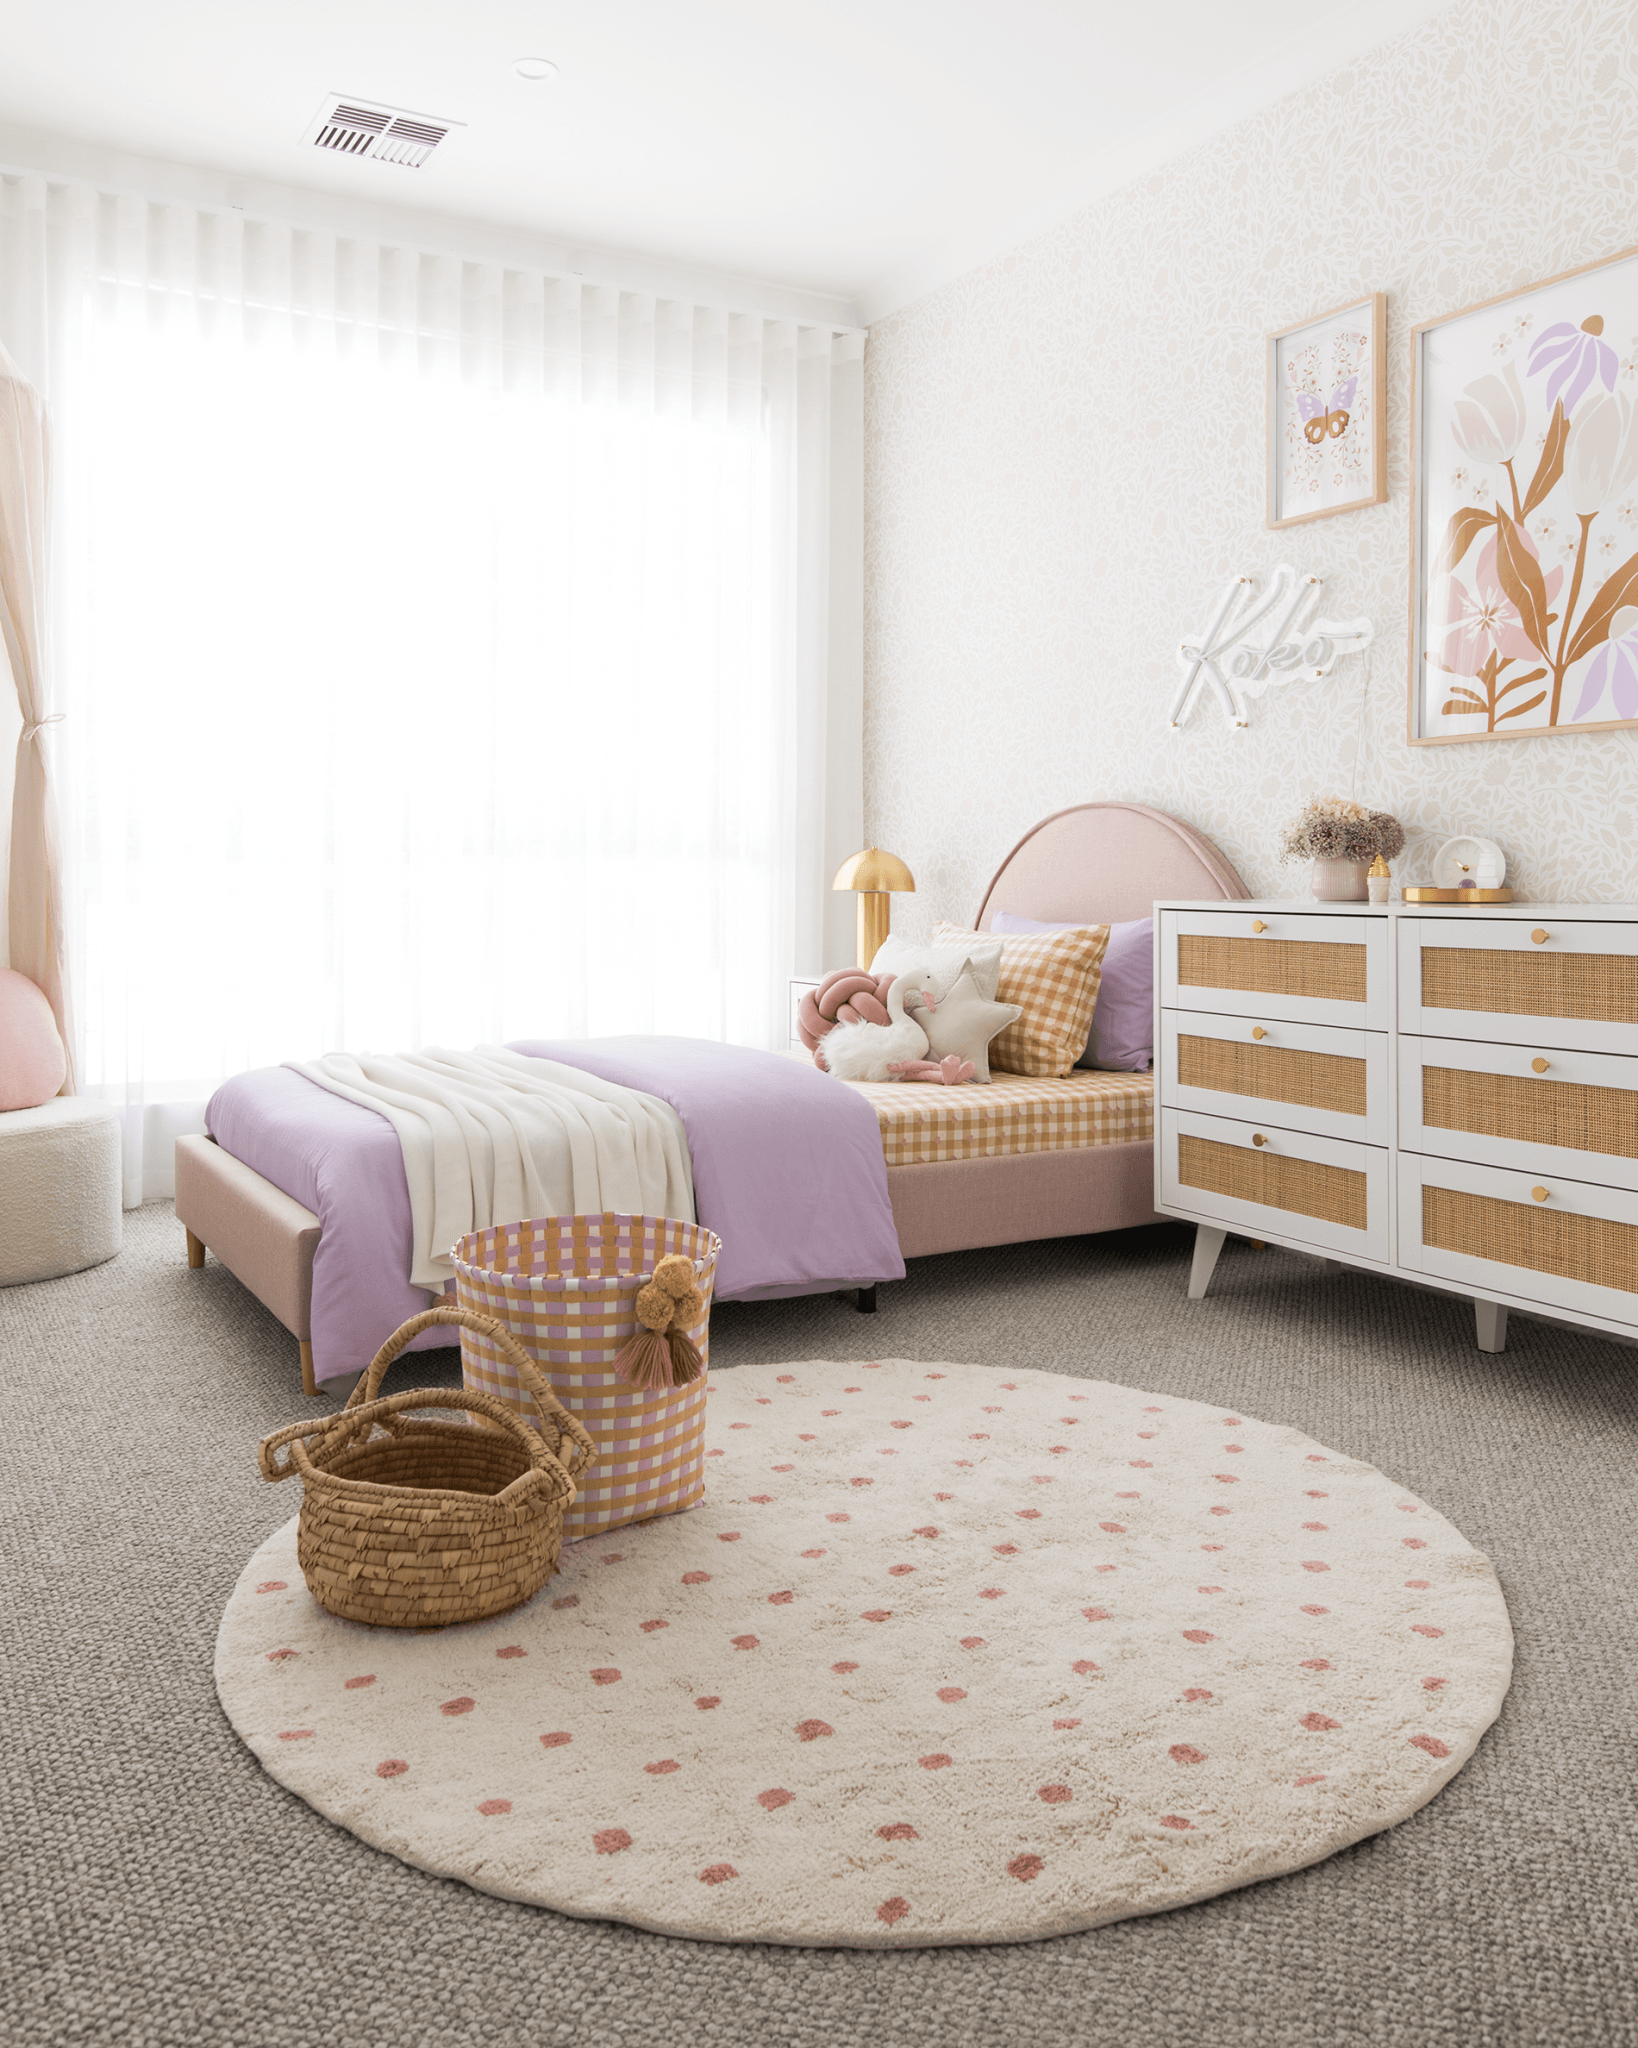 Cream Flower Wallpaper in Girls Room with white dresser